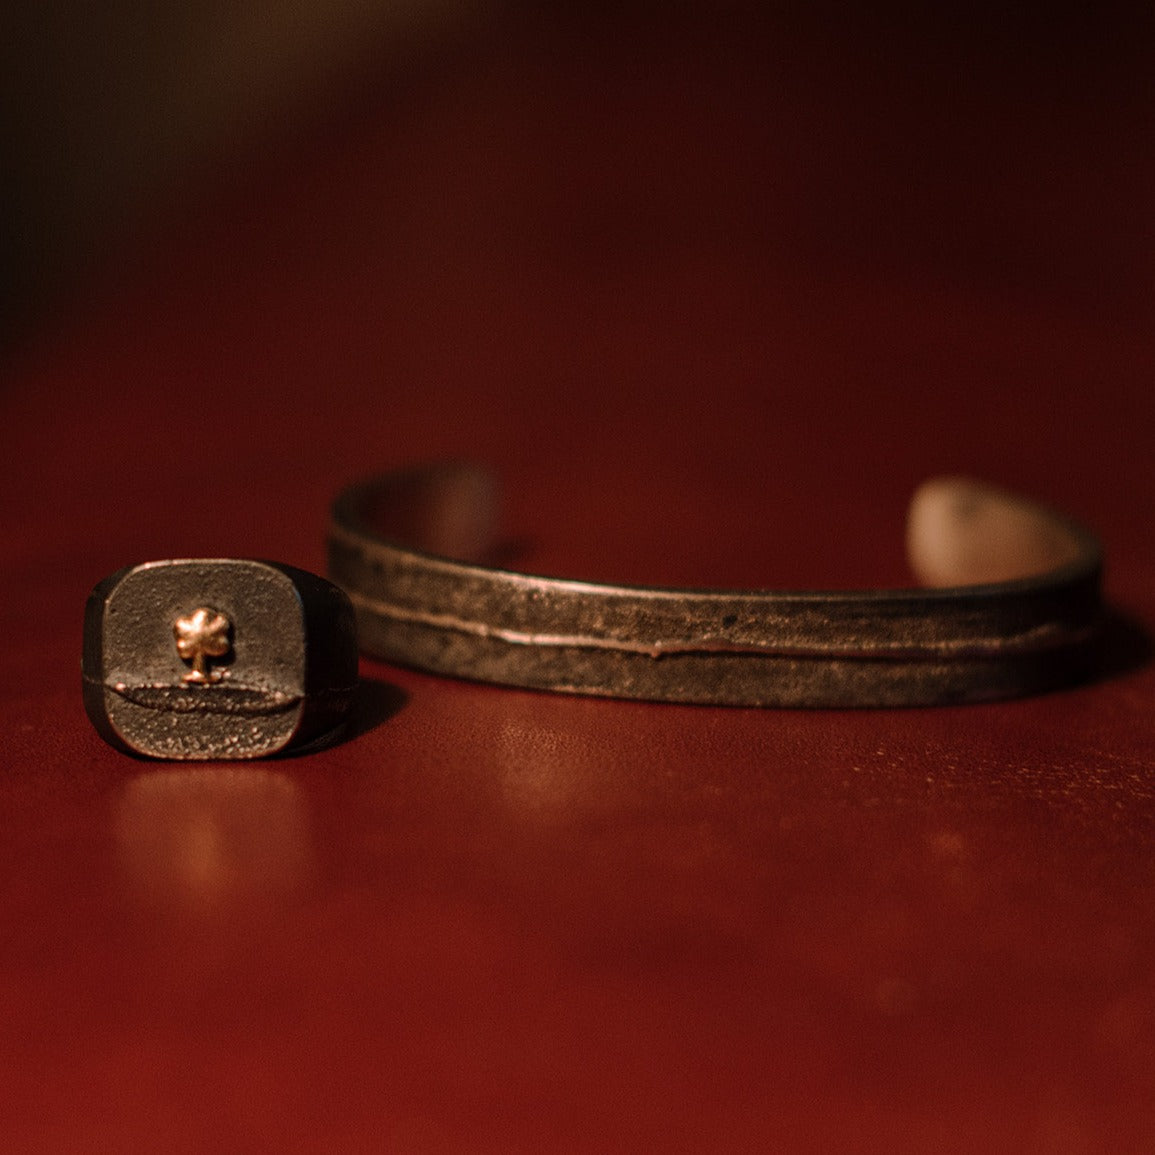 Das Set OAK enthält einen Armreifen sowie einen Siegelring. Diese bestehen aus recyceltem Silber, einer Vergoldung und Sand